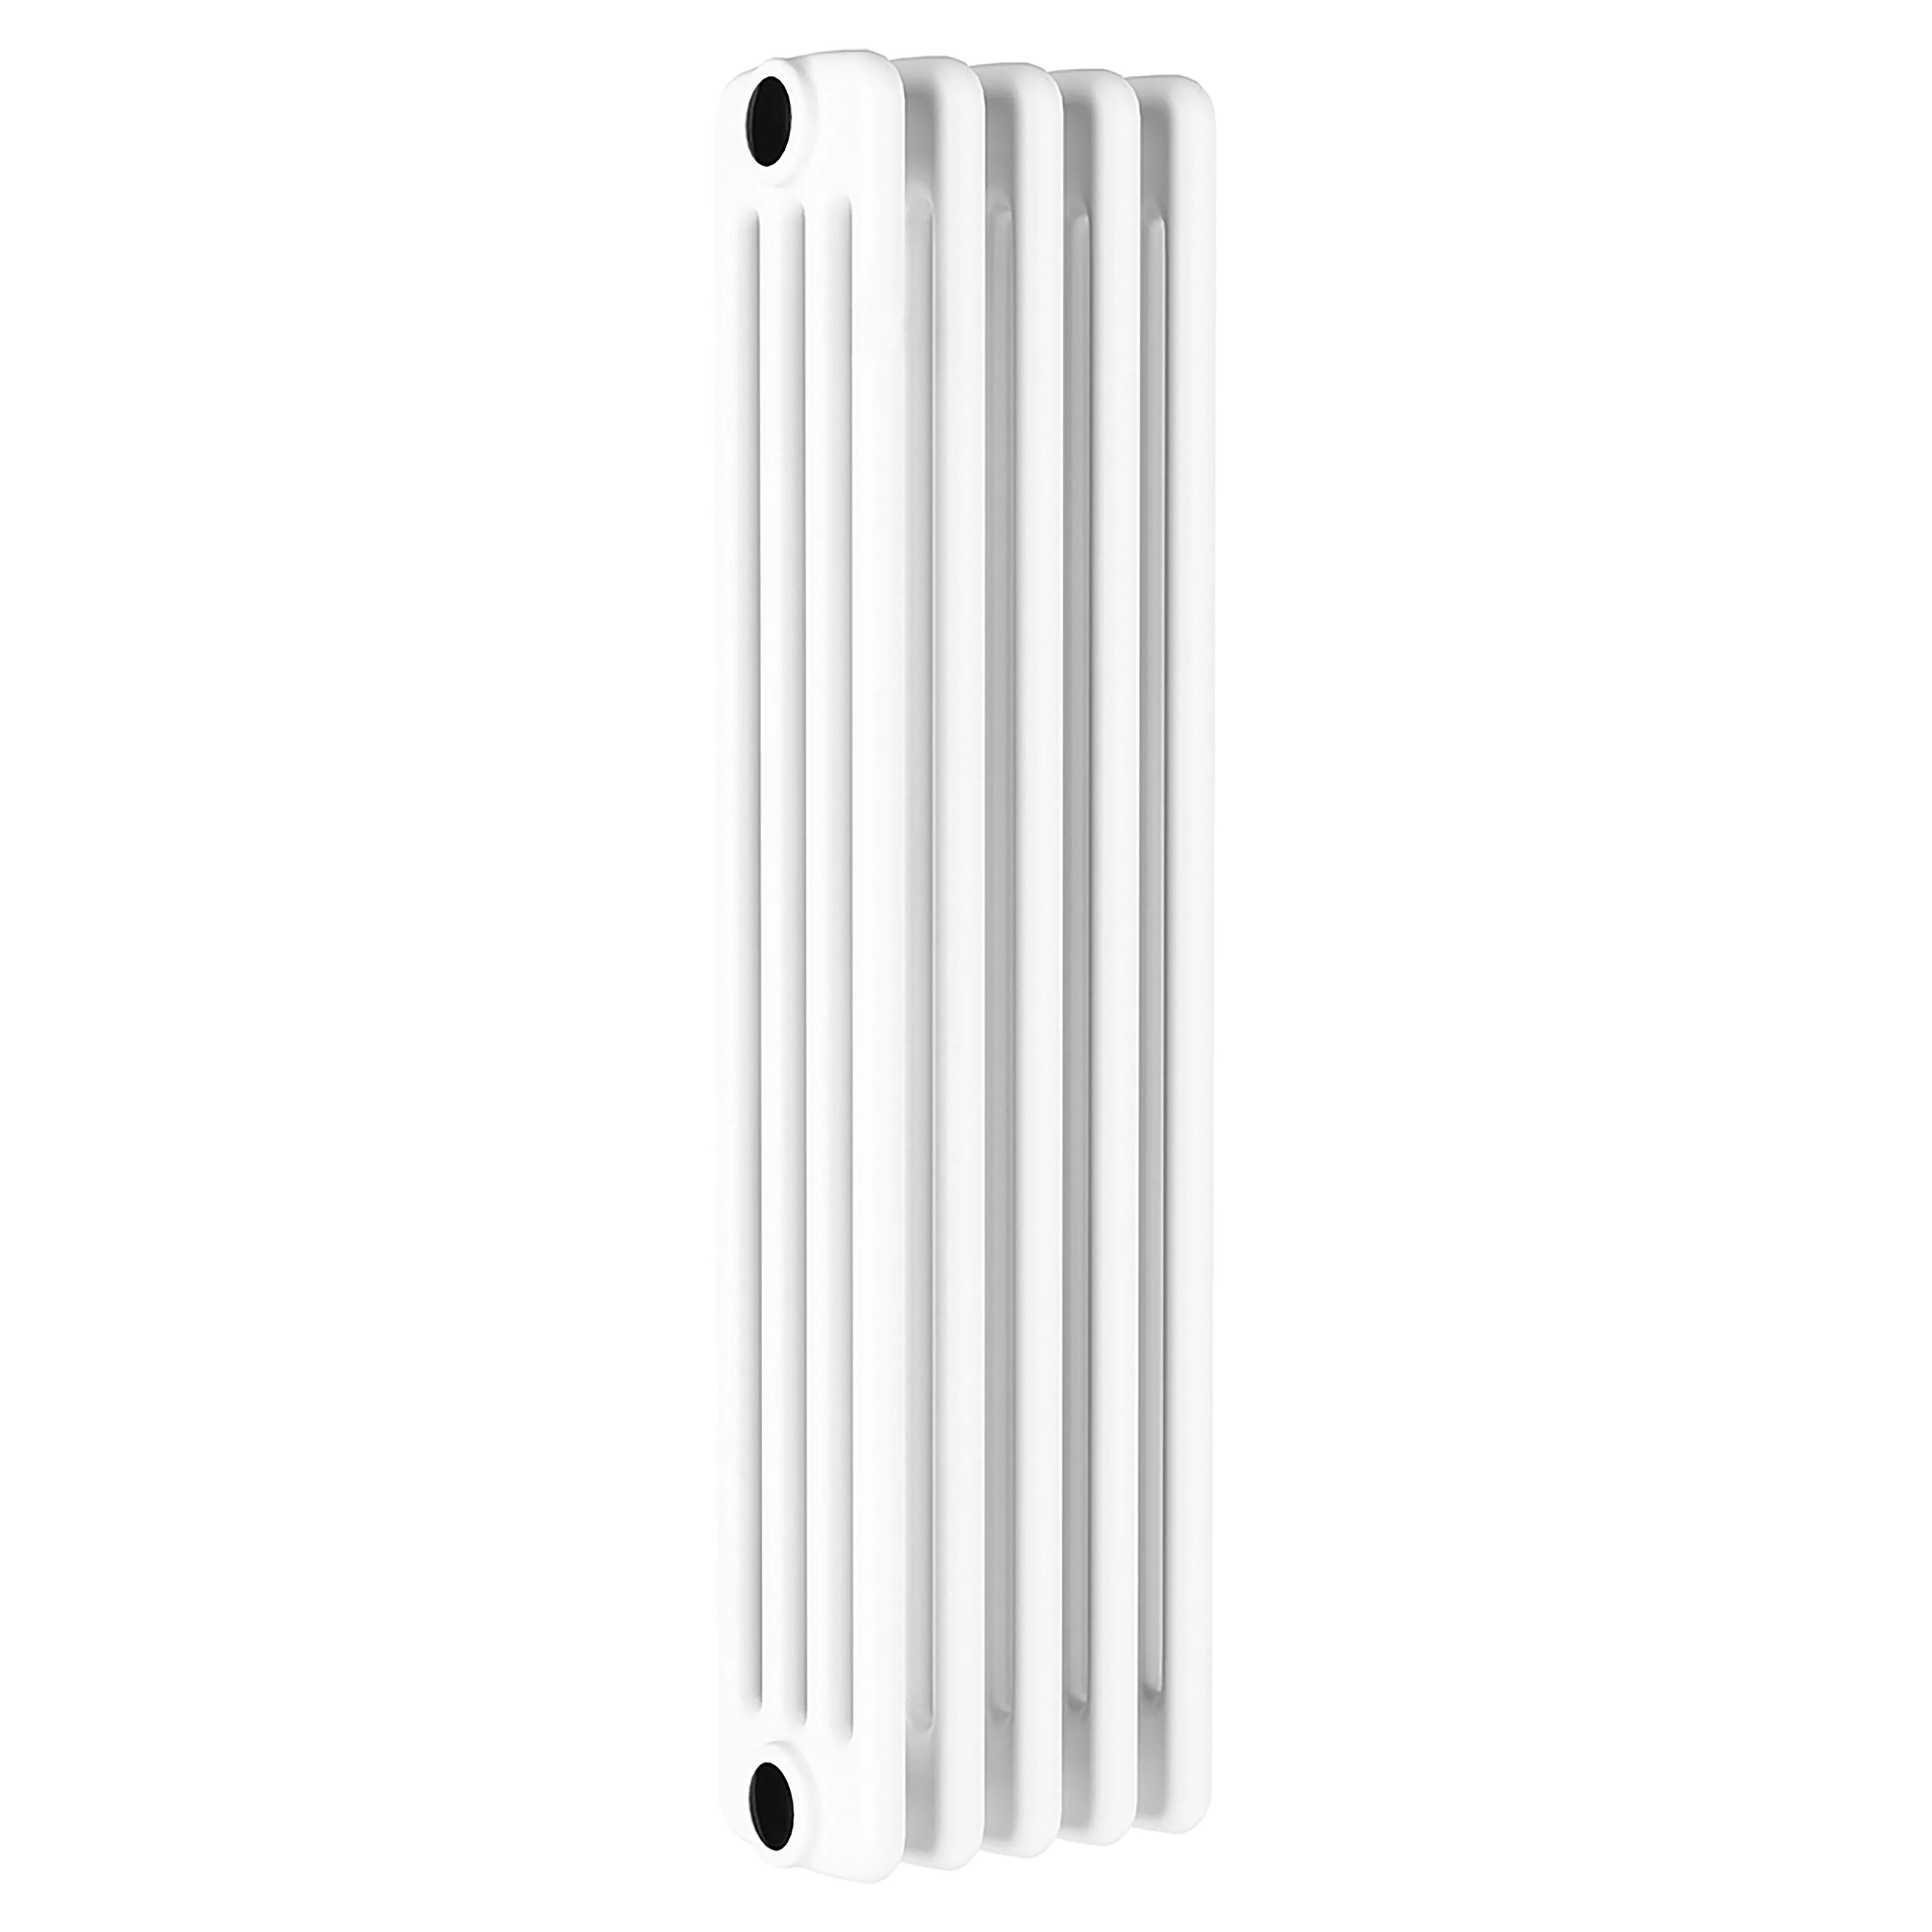 delonghi radiatore de longhi acciaio tubolare 4 colonne 5 elementi h600 mm interasse 530 mm